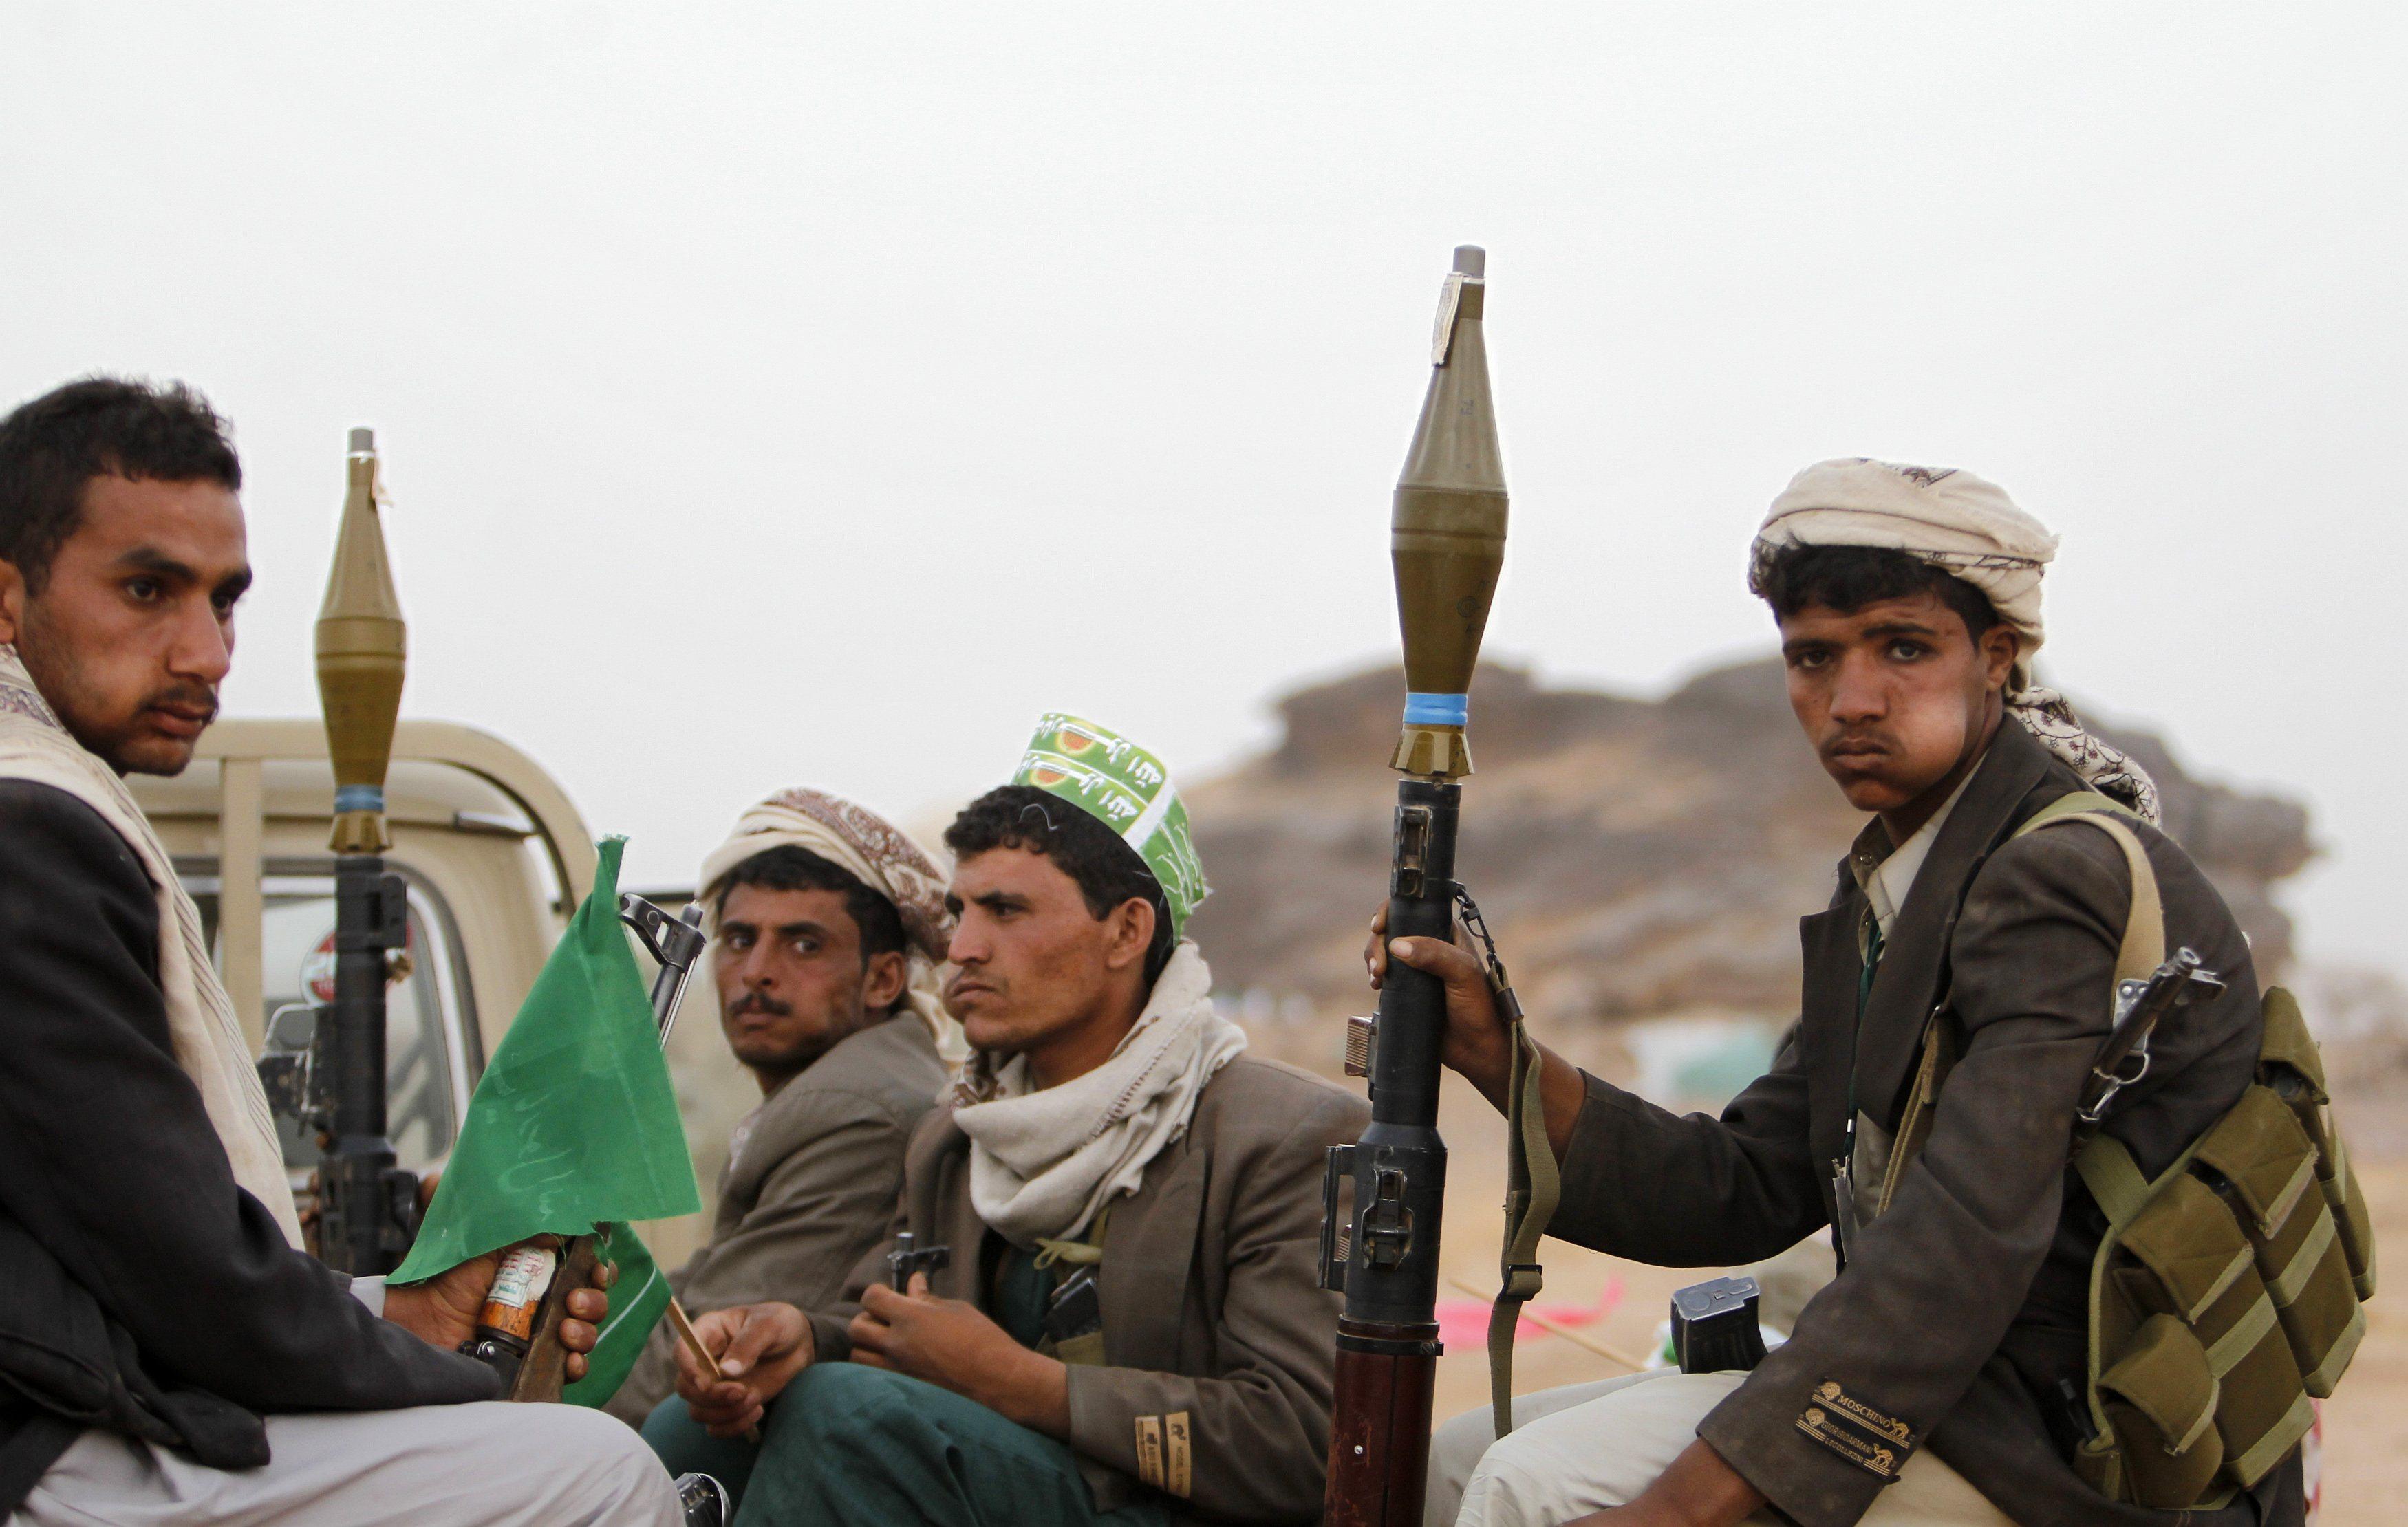 #الحوثي يواصل تعنّته ويمنع المساعدات الإنسانيّة عن المناطق التي يحاصرها